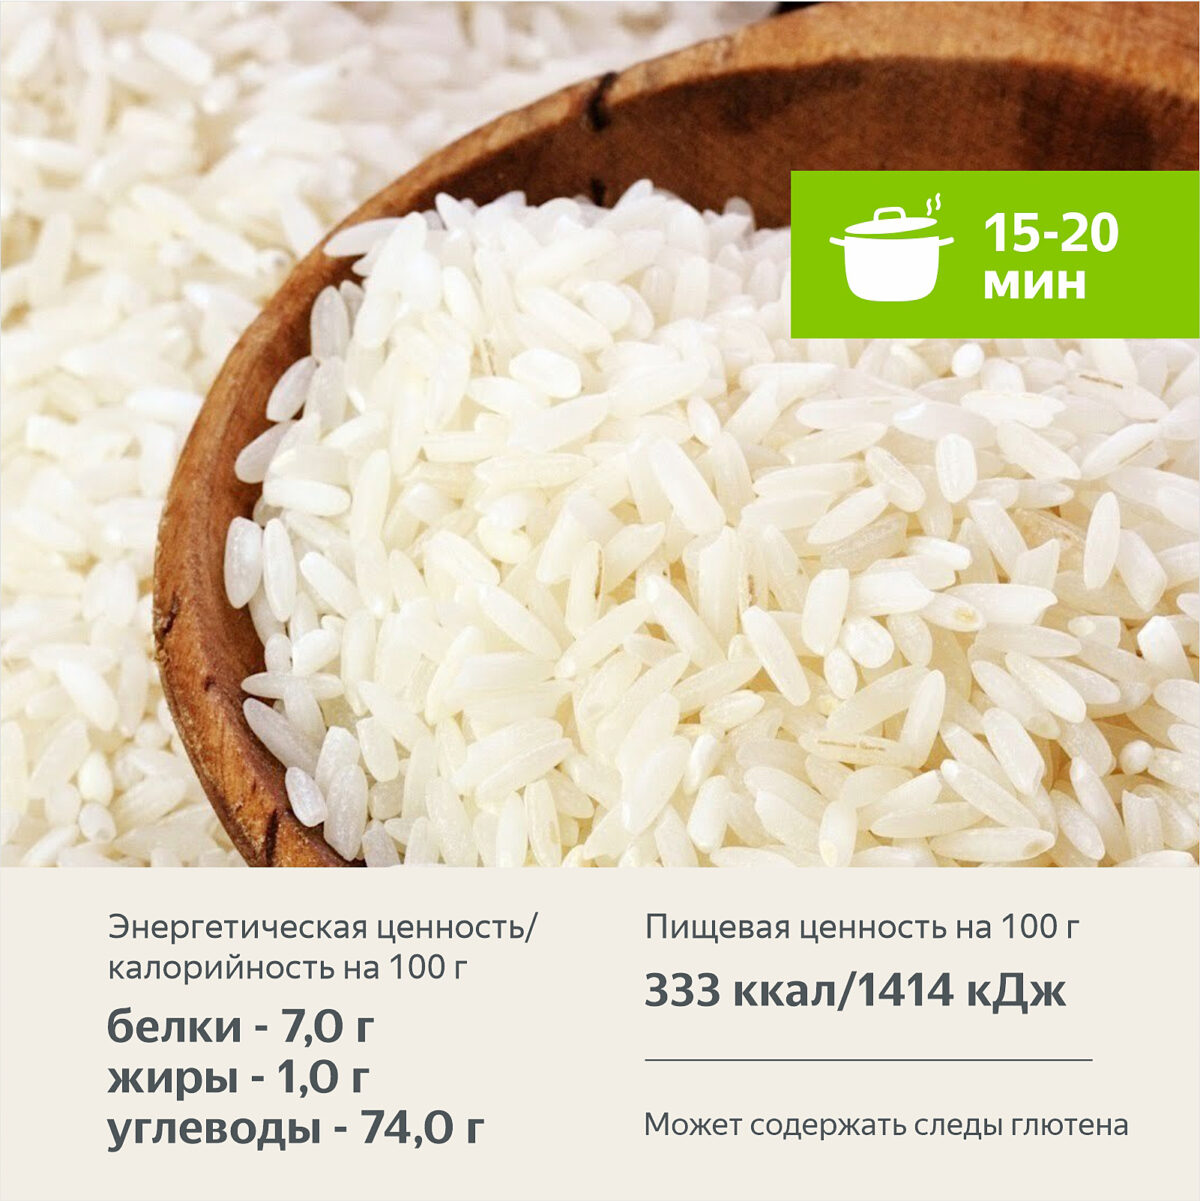 Рис длиннозерный в варочных пакетах 400 гр. Алтайские крупы - Интернет-магазин